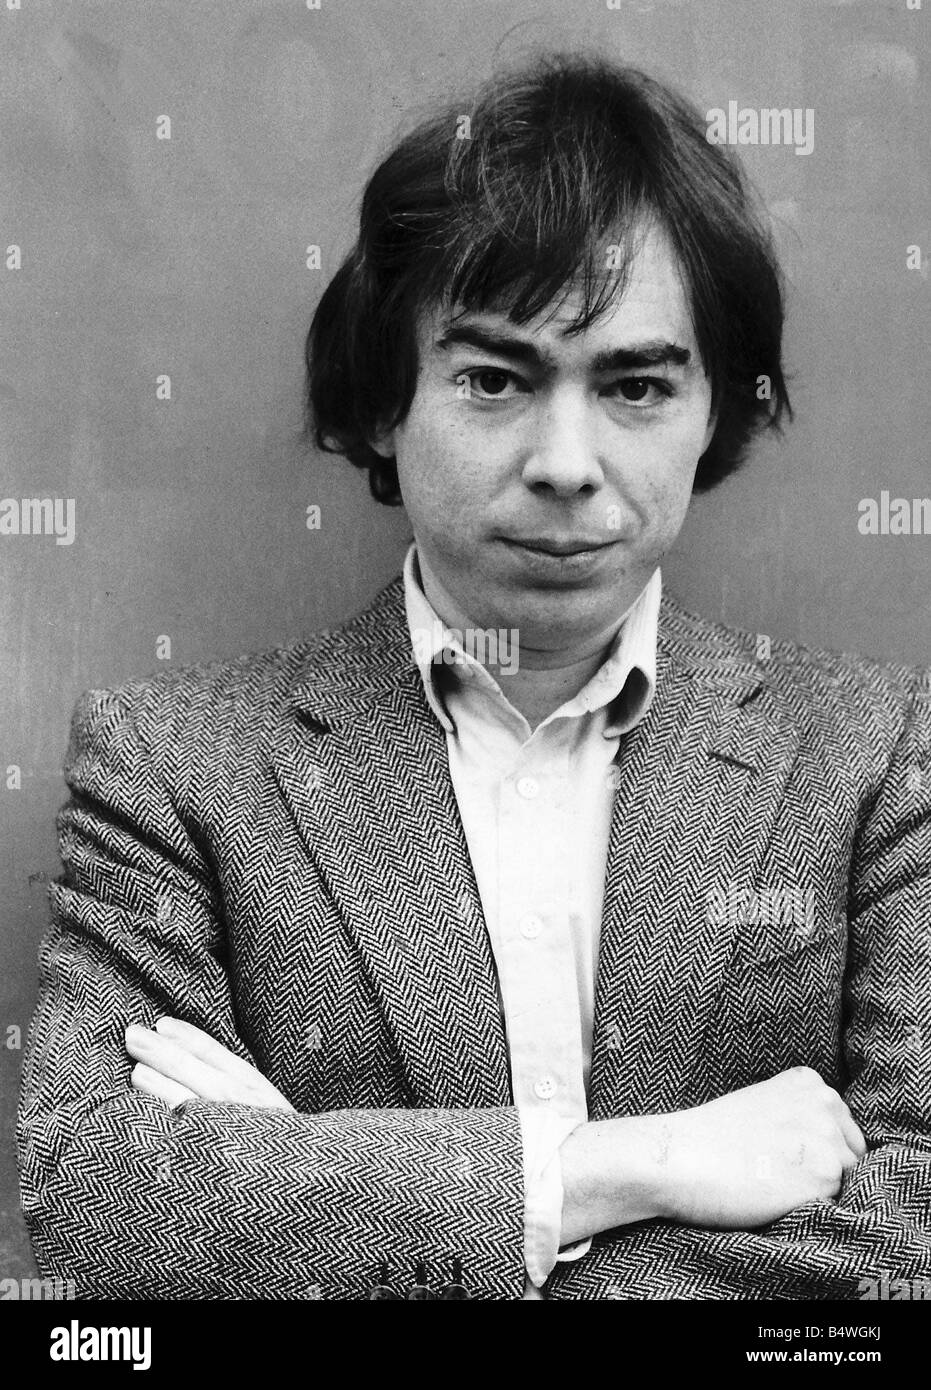 Andrew Lloyd Webber Composer February 1982 Stock Photo